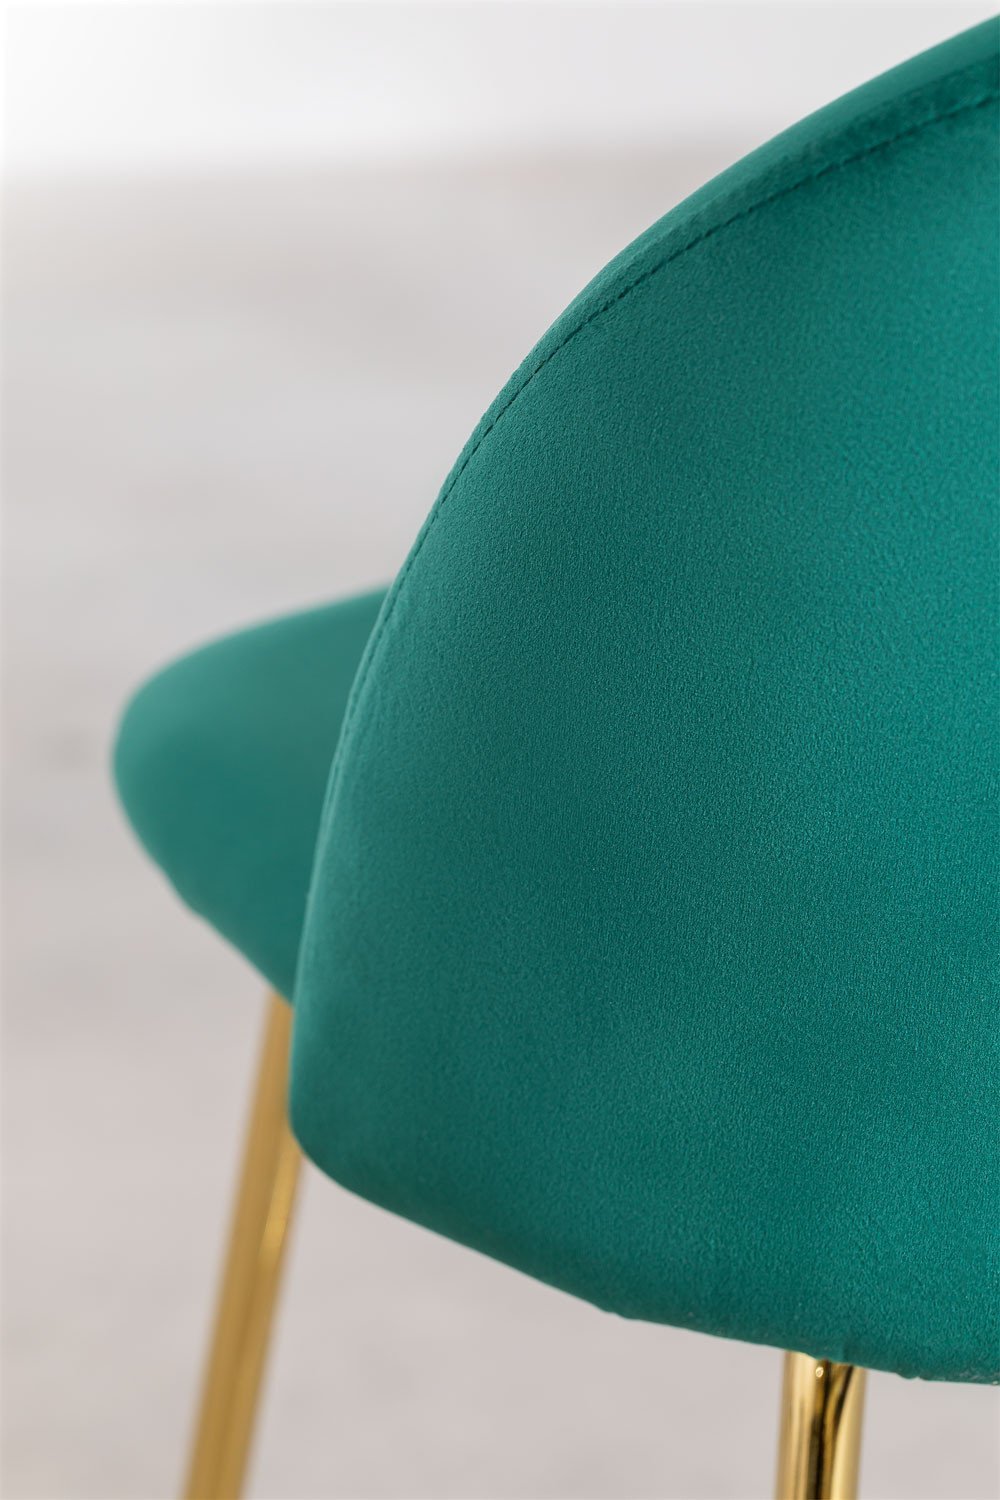 Taburete Alto en Terciopelo Kana Design ↑65 cm Verde Jungla Dorado -  SKLUM